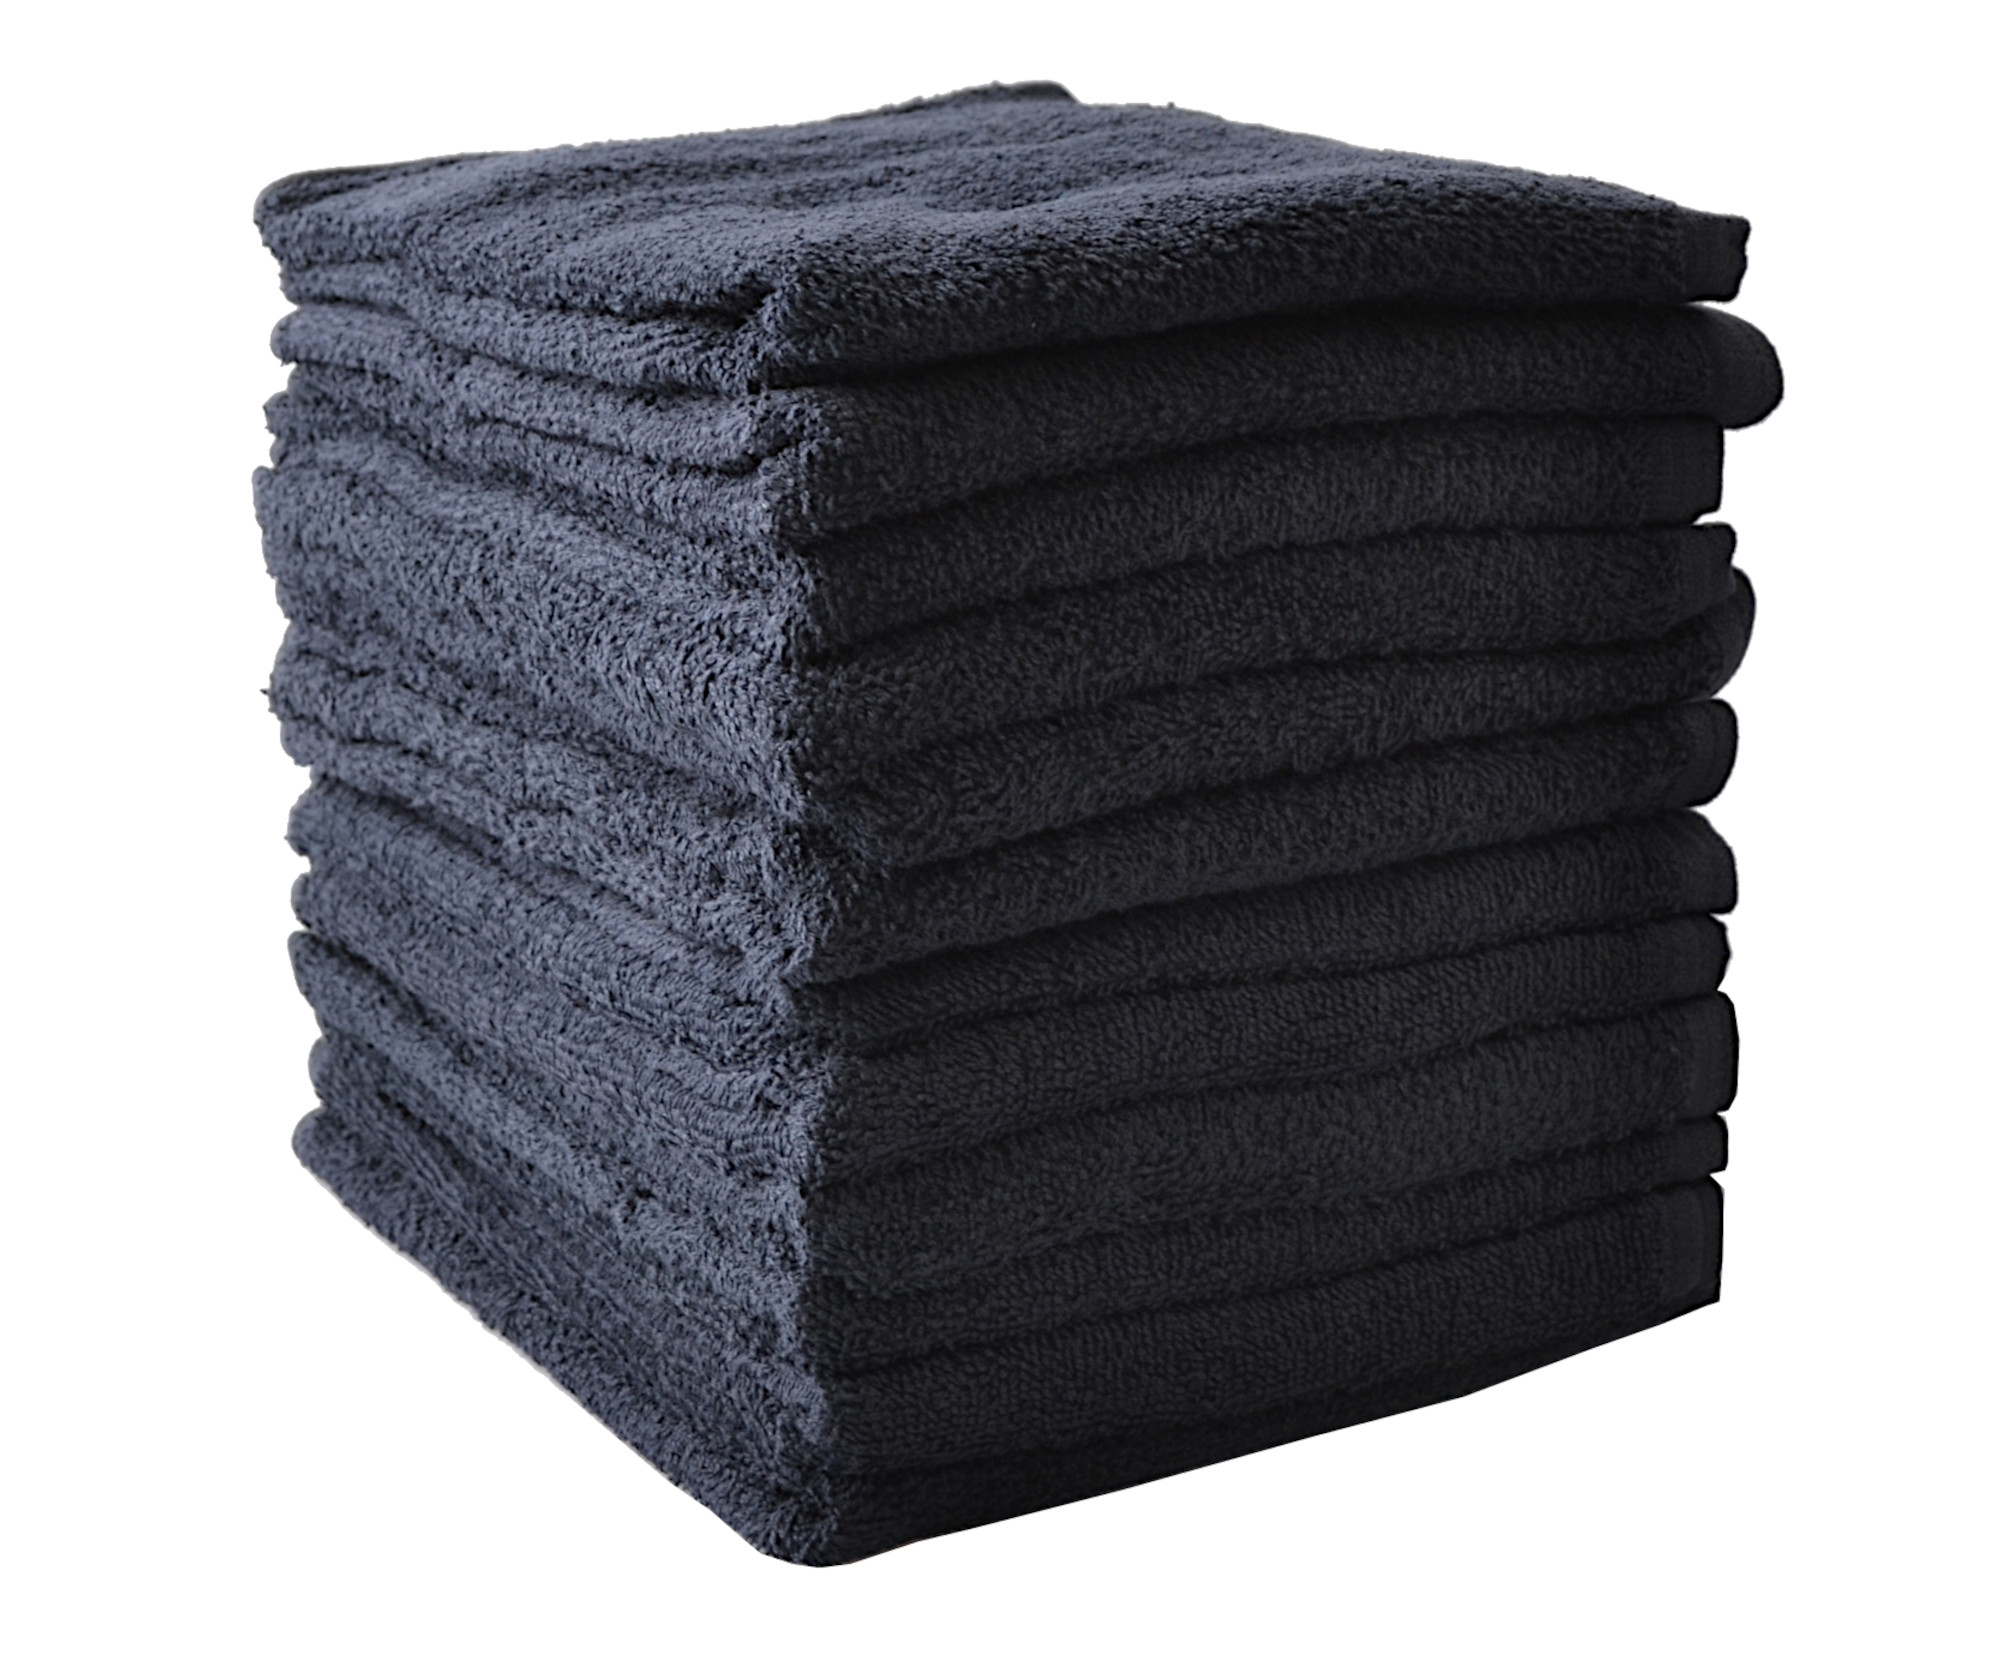 Ručníky froté 80 x 50 cm, 100% bavlna, Sibel, černé - 12 ks (3500302) + DÁREK ZDARMA